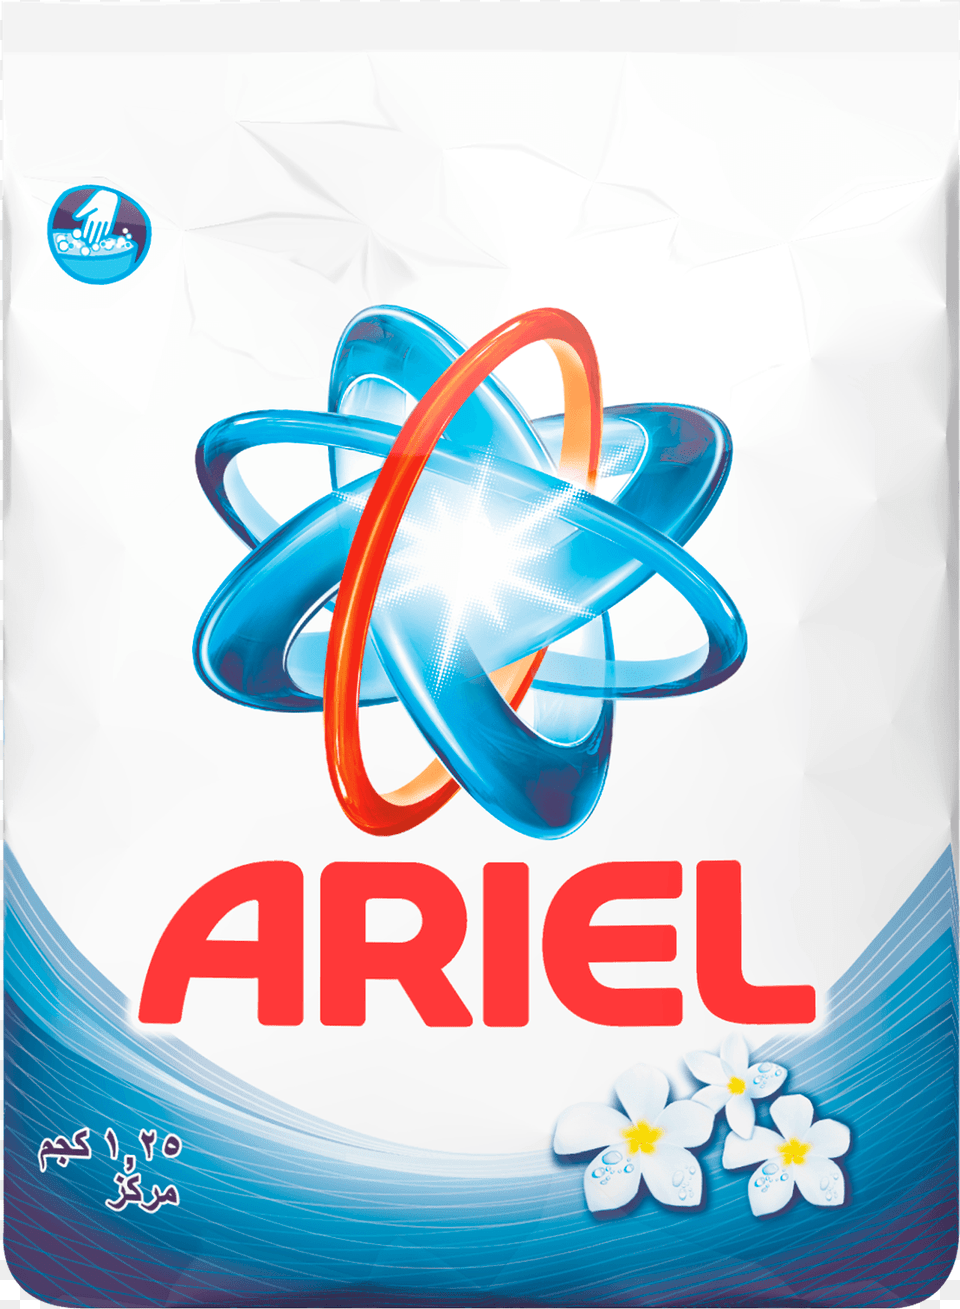 Washing Powder Ariel Washing Powder, Advertisement, Poster, Art, Graphics Free Png